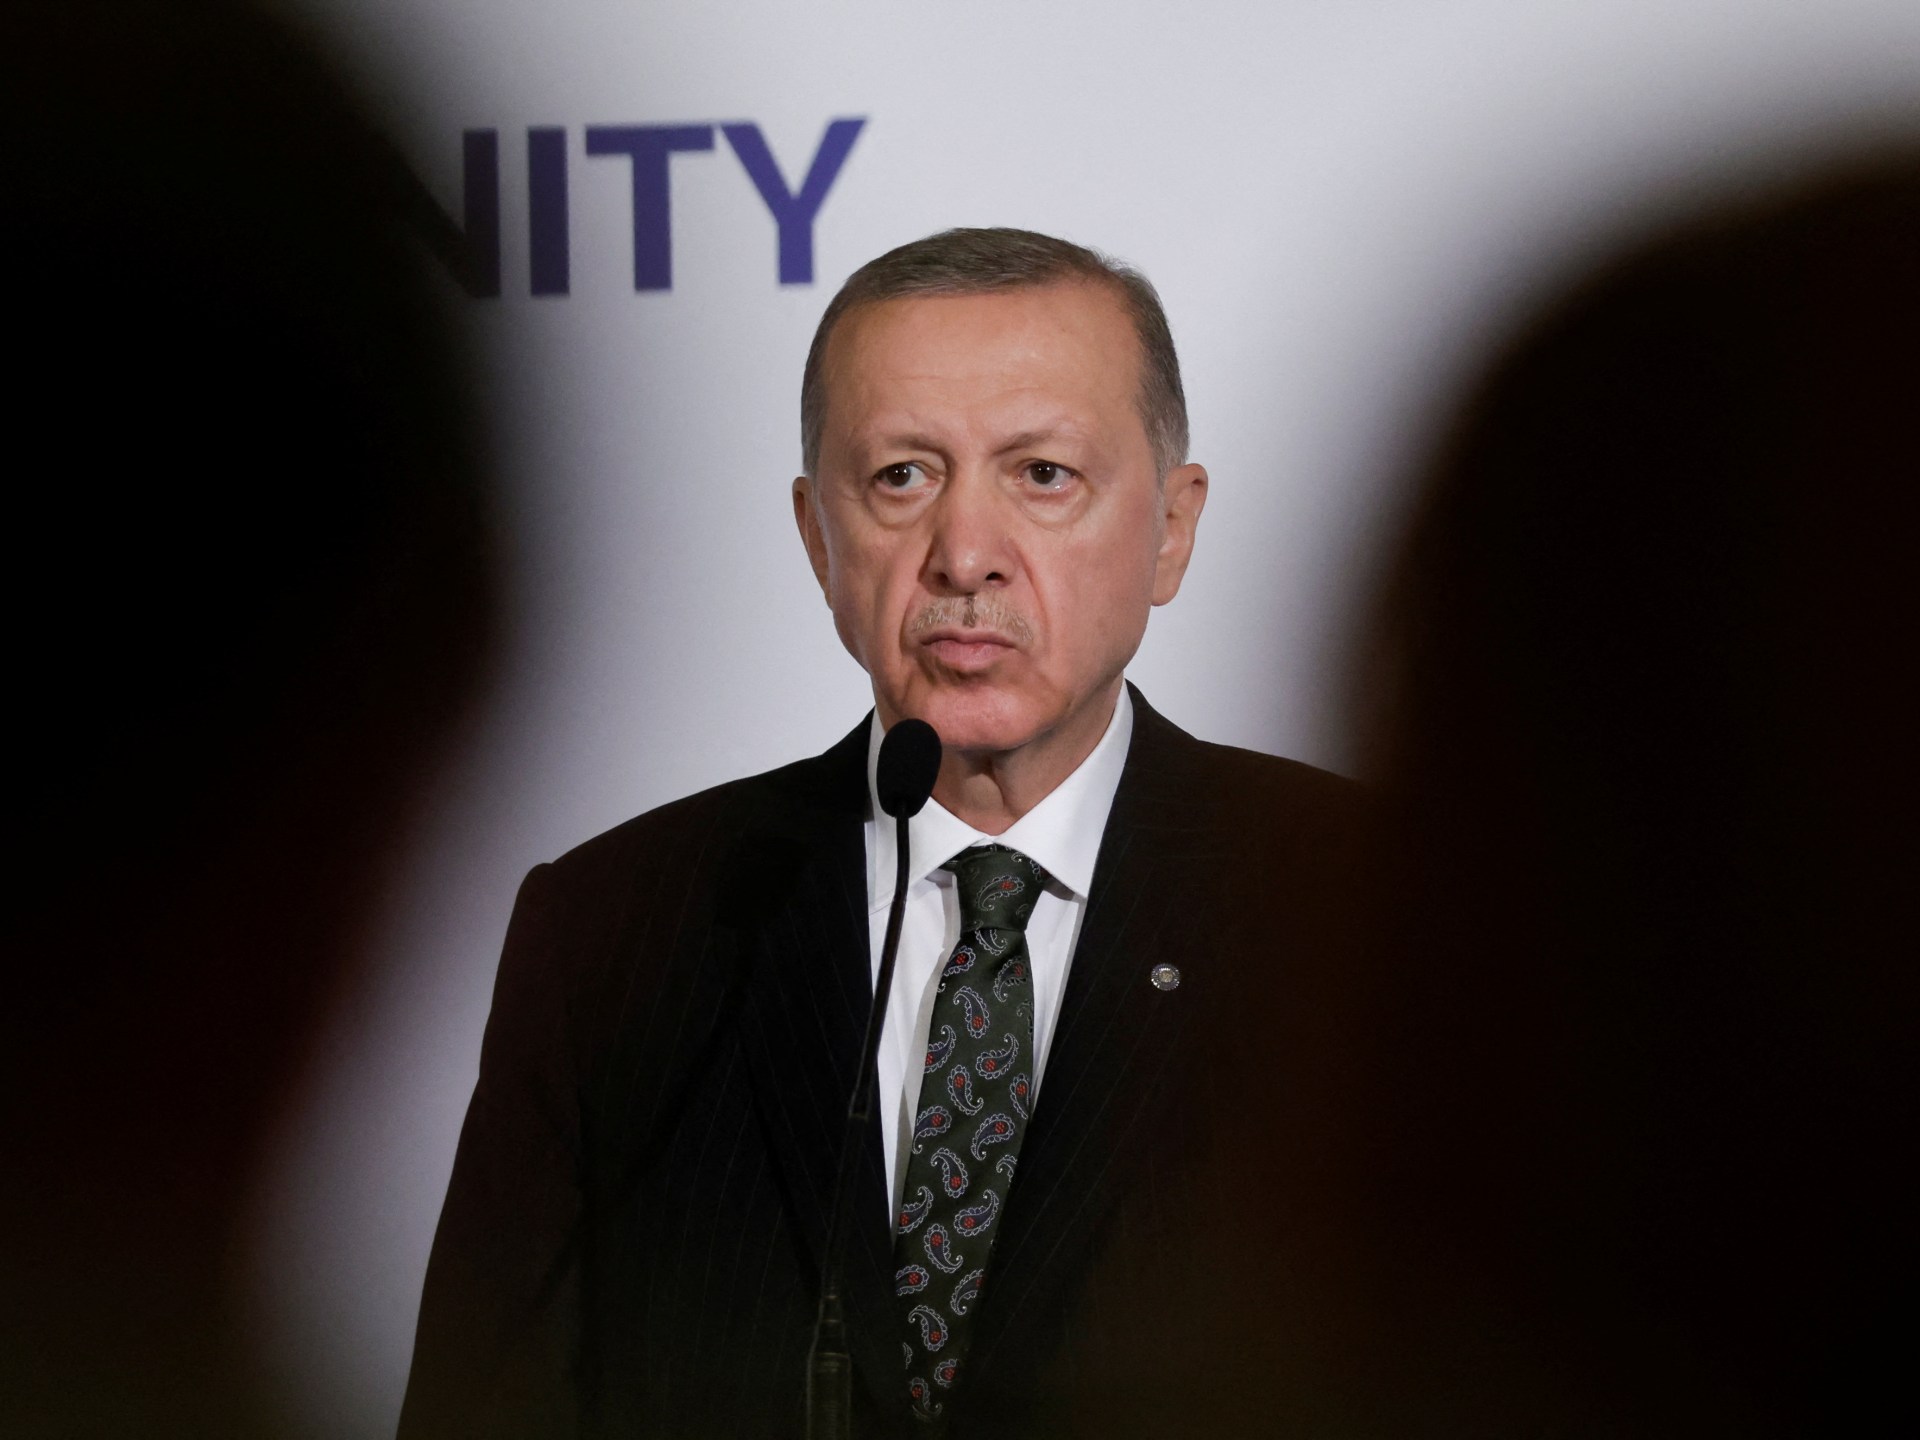 Erdogan krytykuje Sąd Najwyższy i podnosi kwestię kryzysu sądownictwa w Turcji  Aktualności